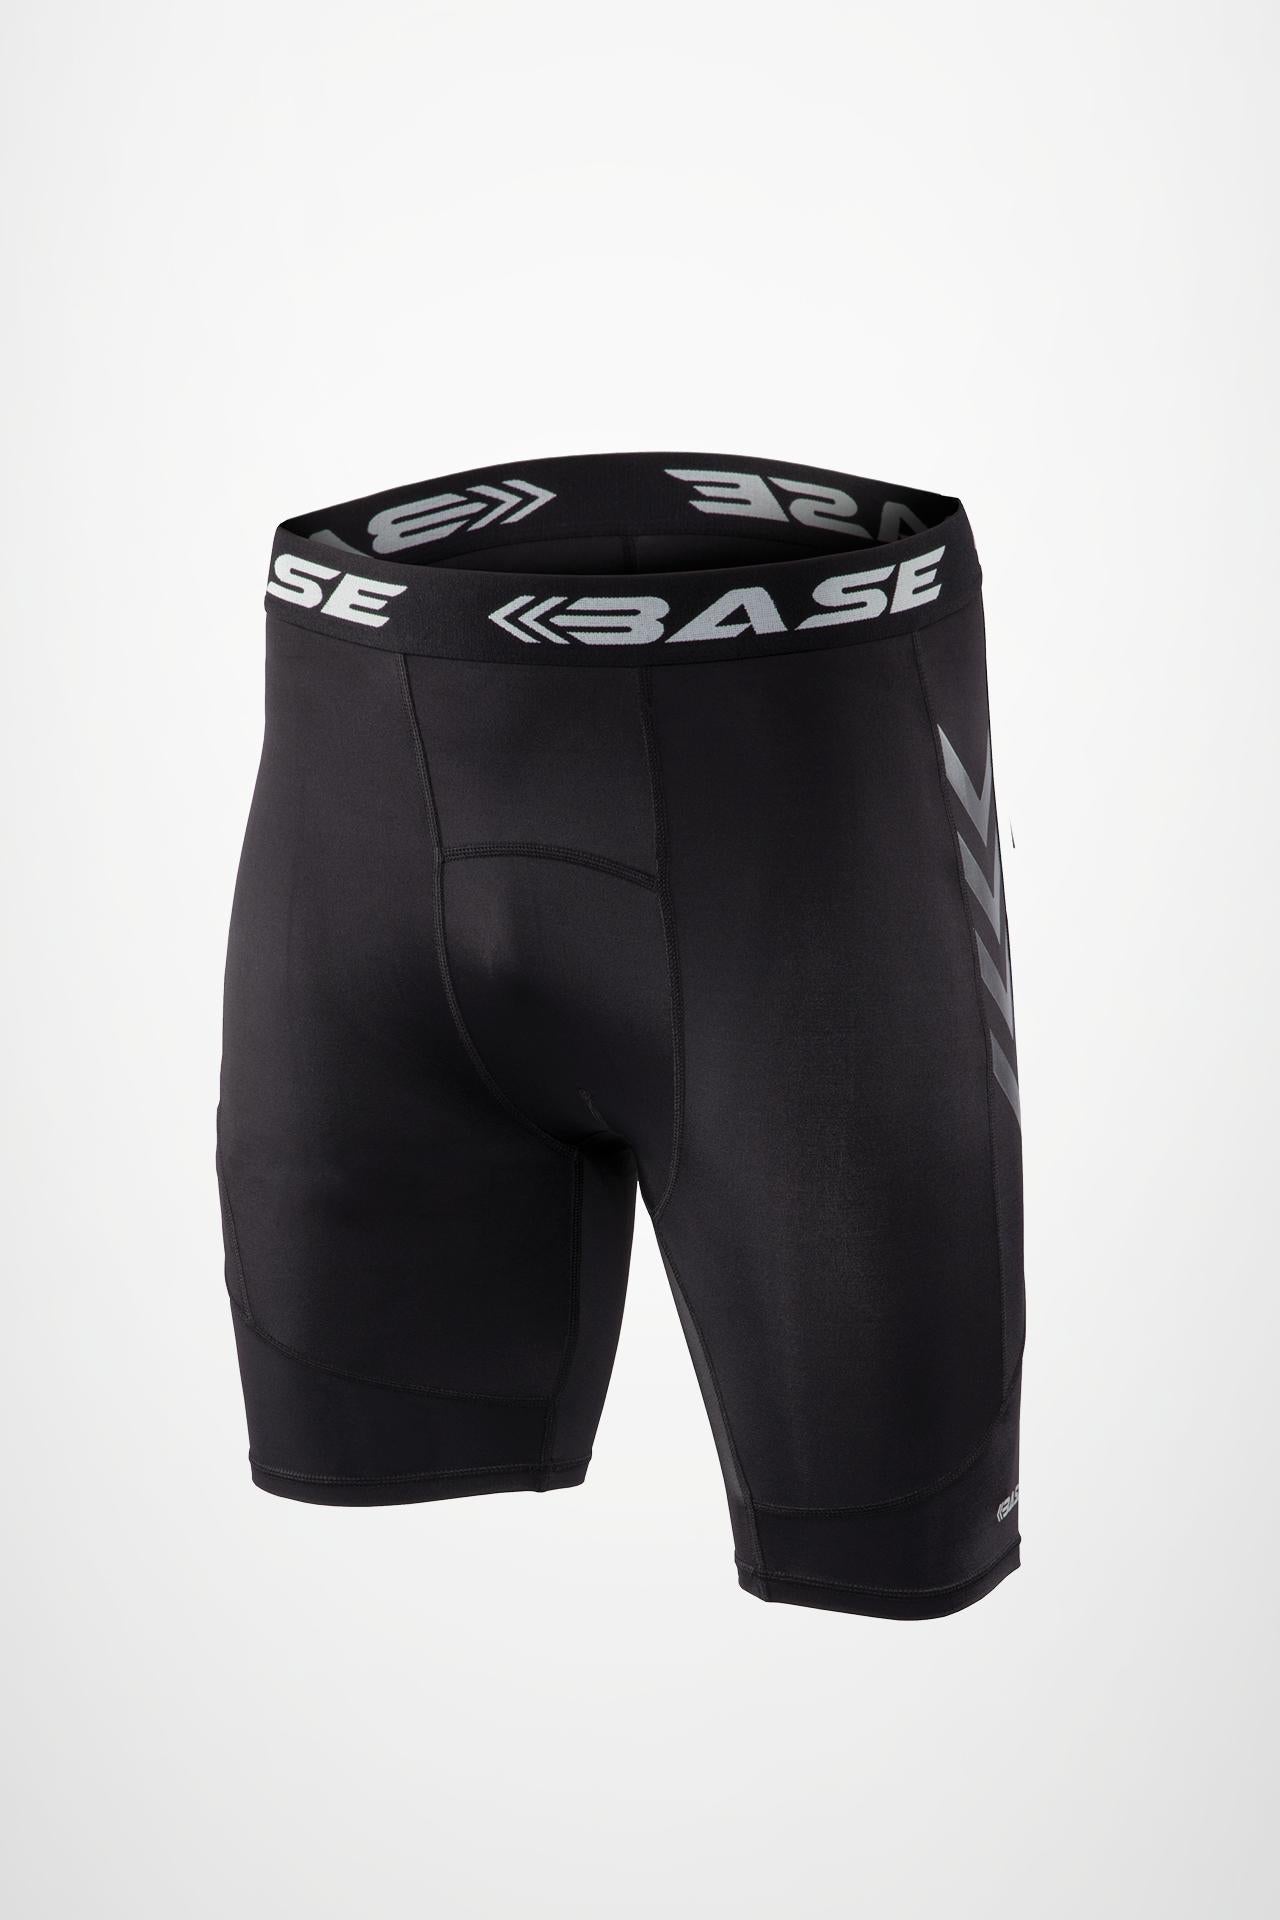 BASE Men's Compression Shorts - Black - Adelaide 36ers